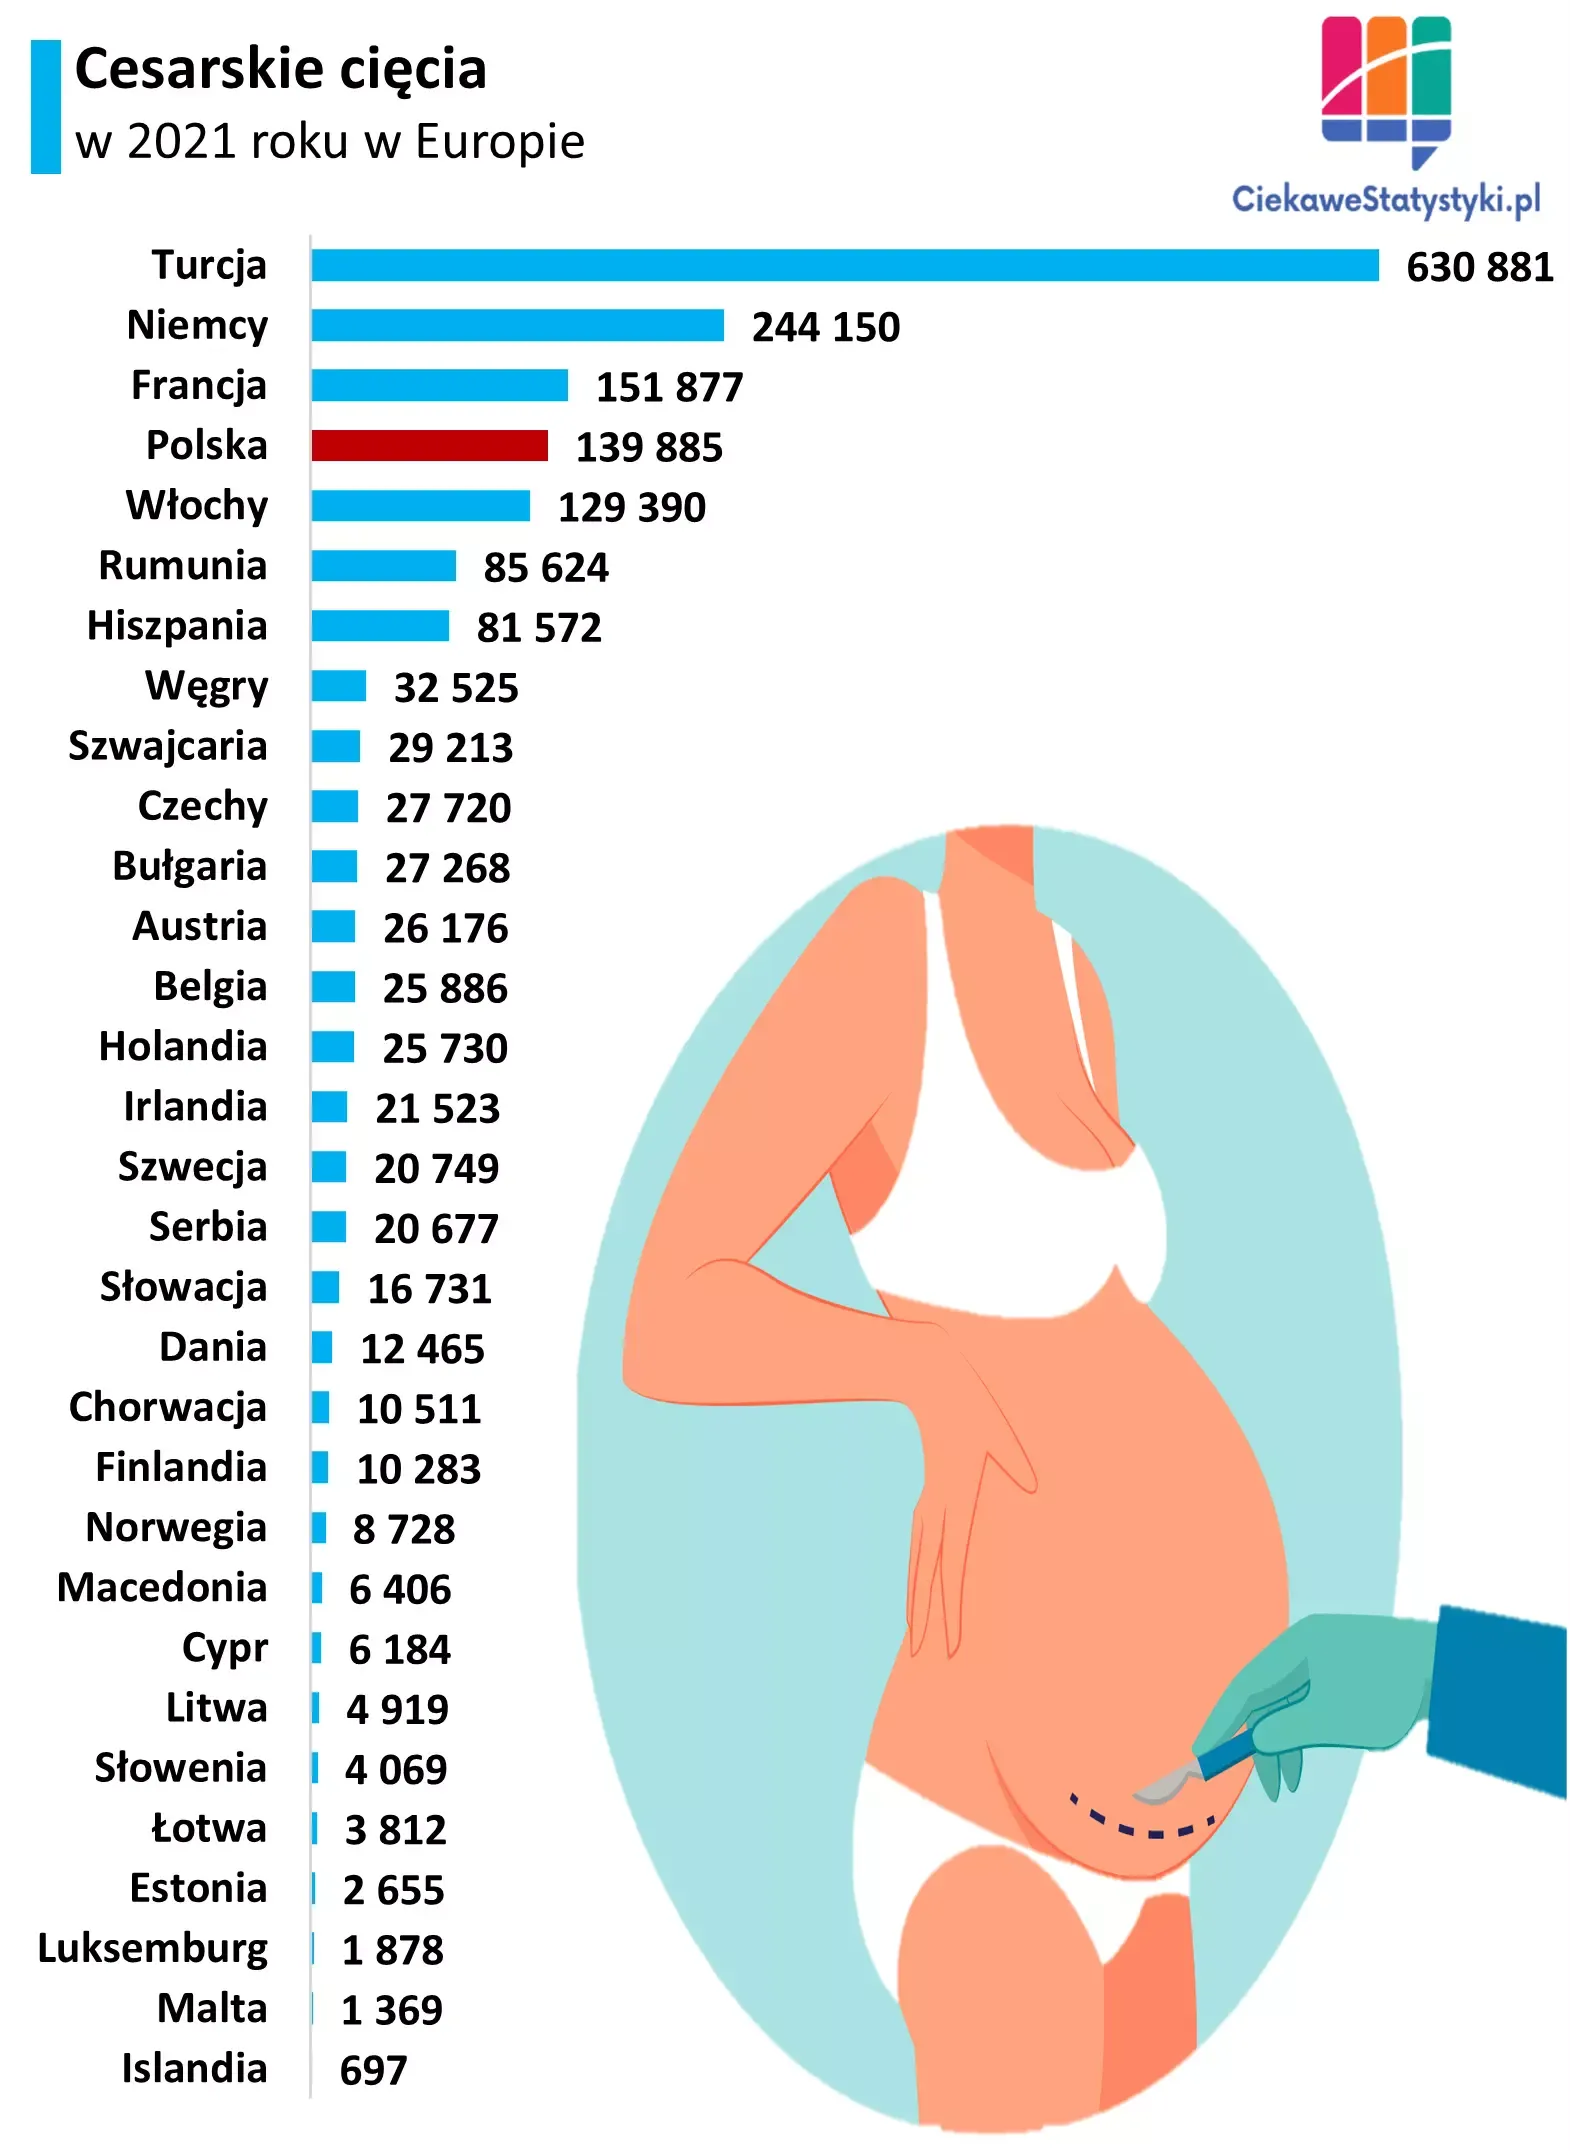 Wykres pokazuje ile cesarskich cięć wykonano w Polsce i w innych krajach Europy